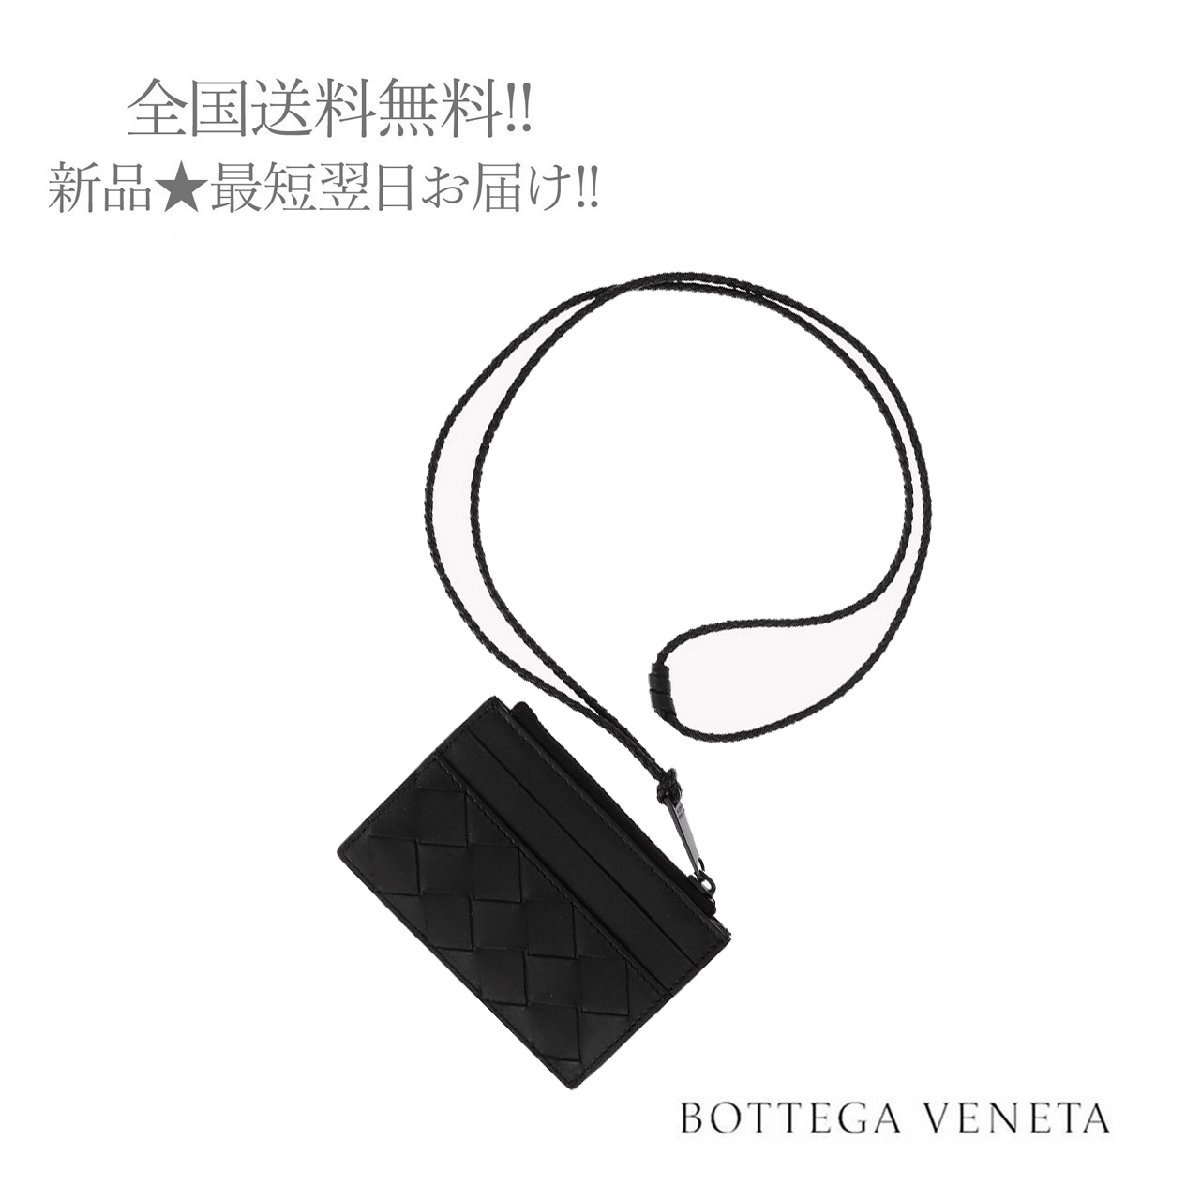 J249.. BOTTEGA VENETA ボッテガ ヴェネタ カードケース コインケース コード イントレ イタリア製 ★ 8984 ブラック